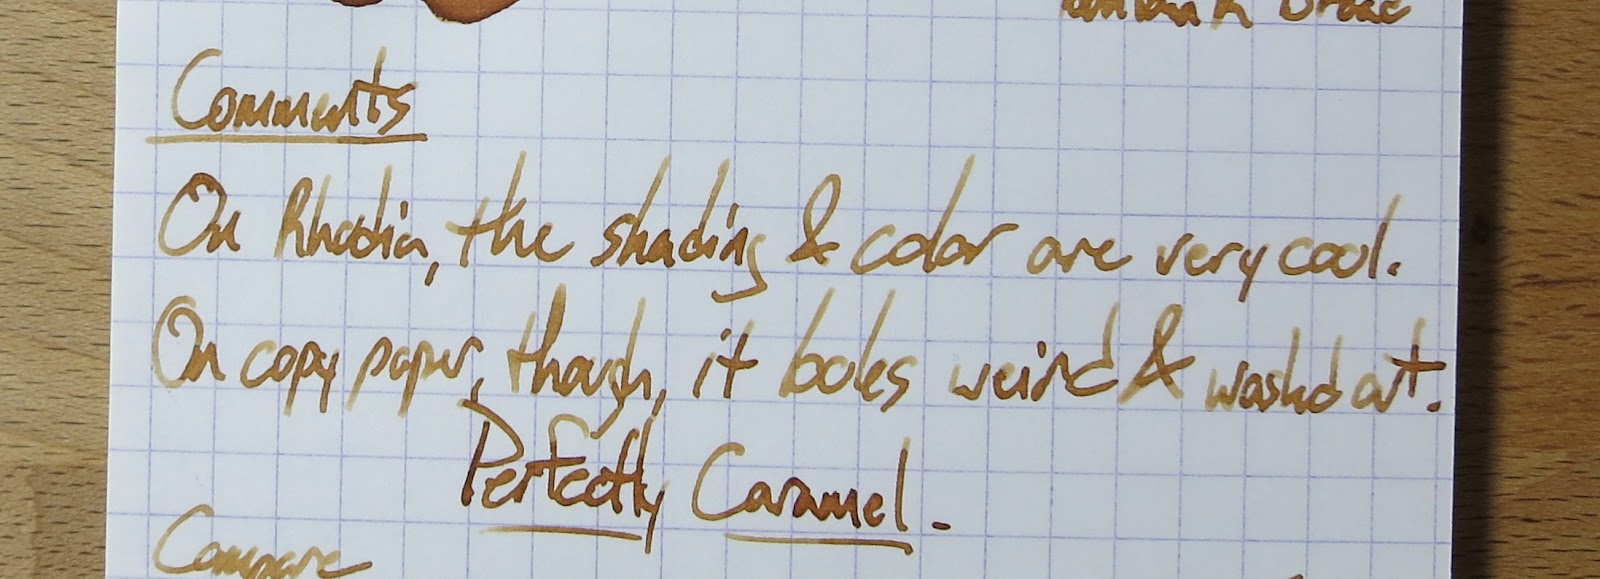 Noodler's Golden Brown - Ink Sample